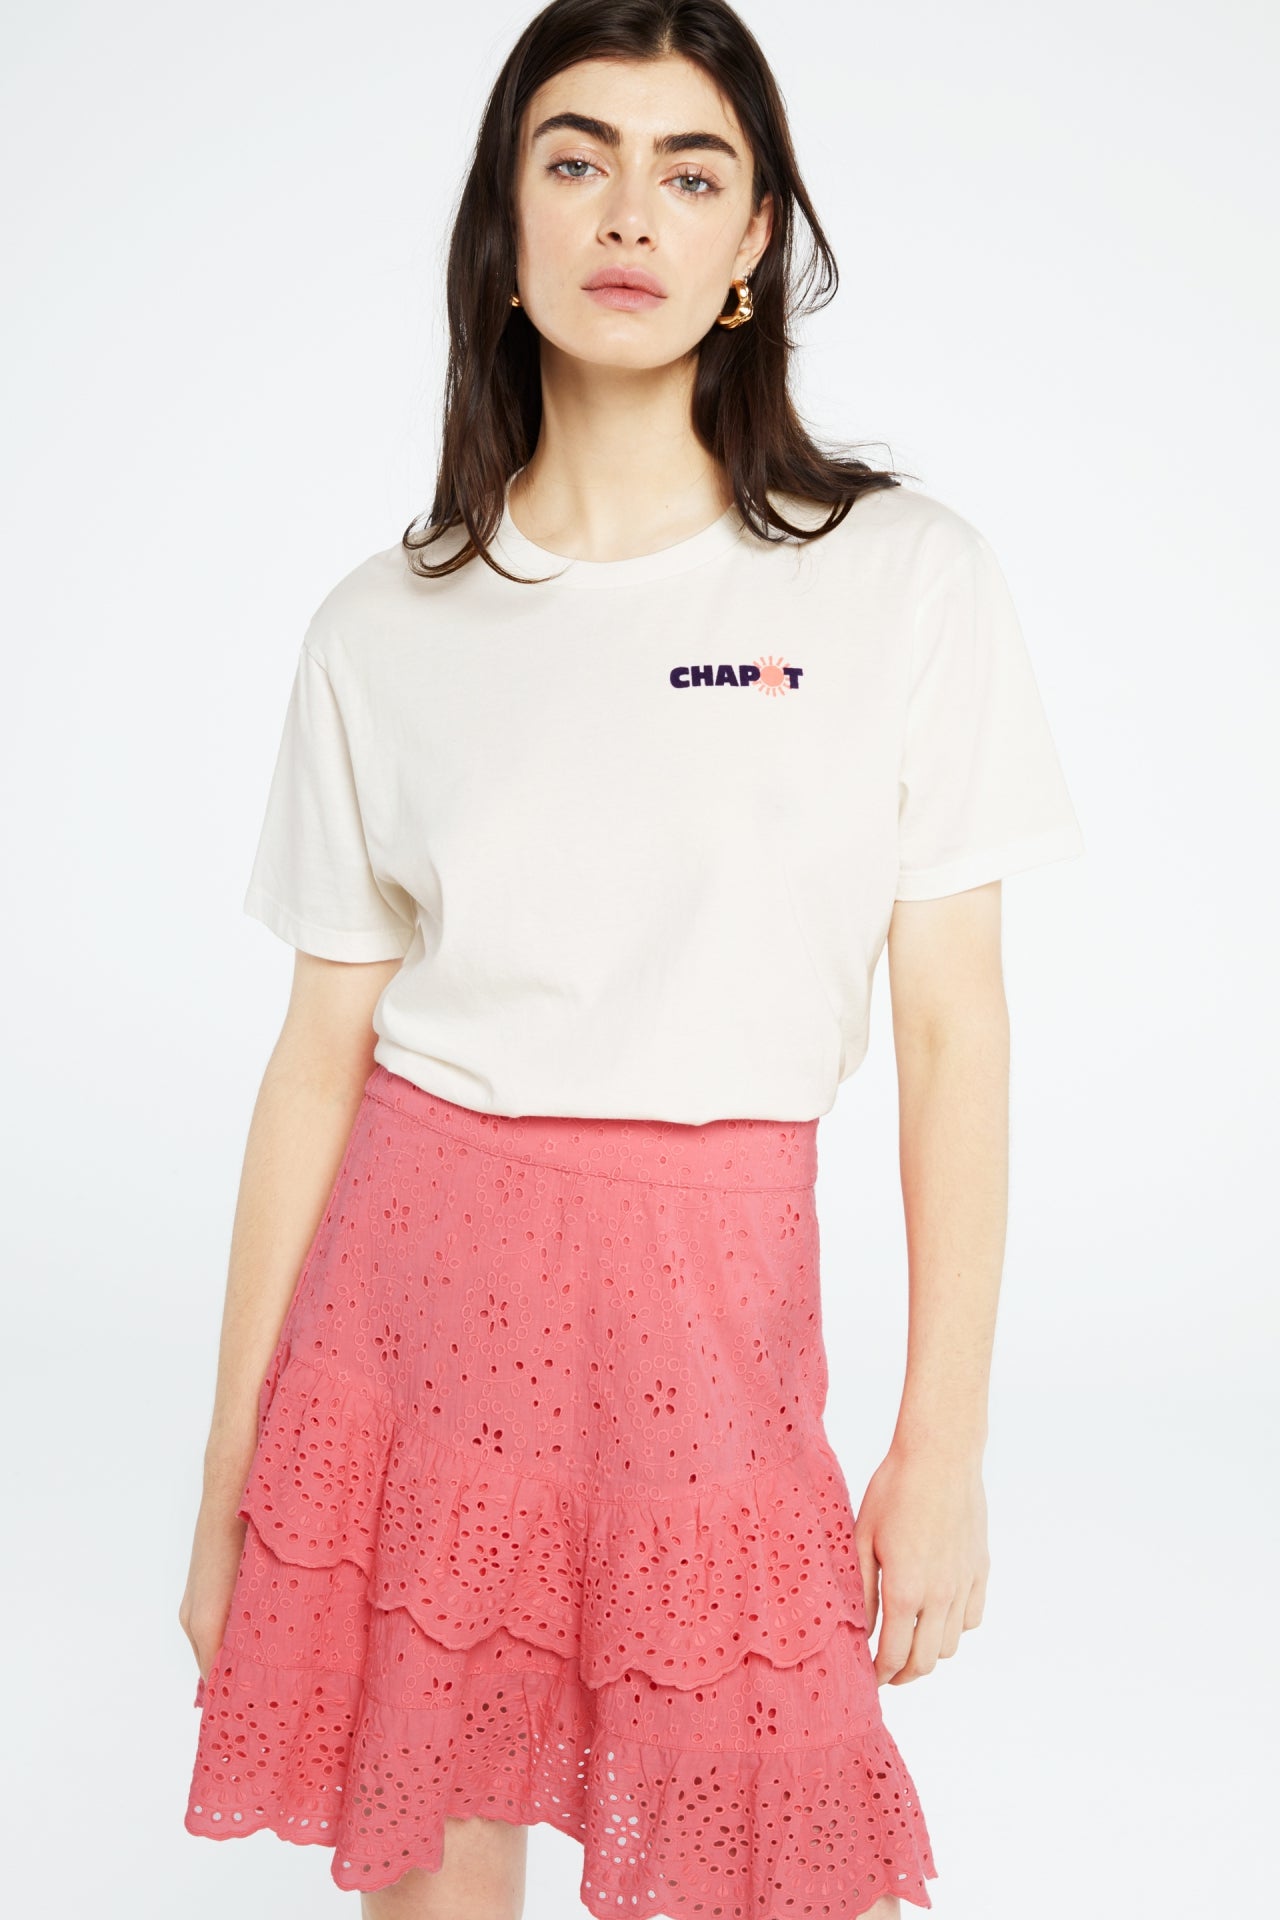 Florence Skirt | Pink Papaya